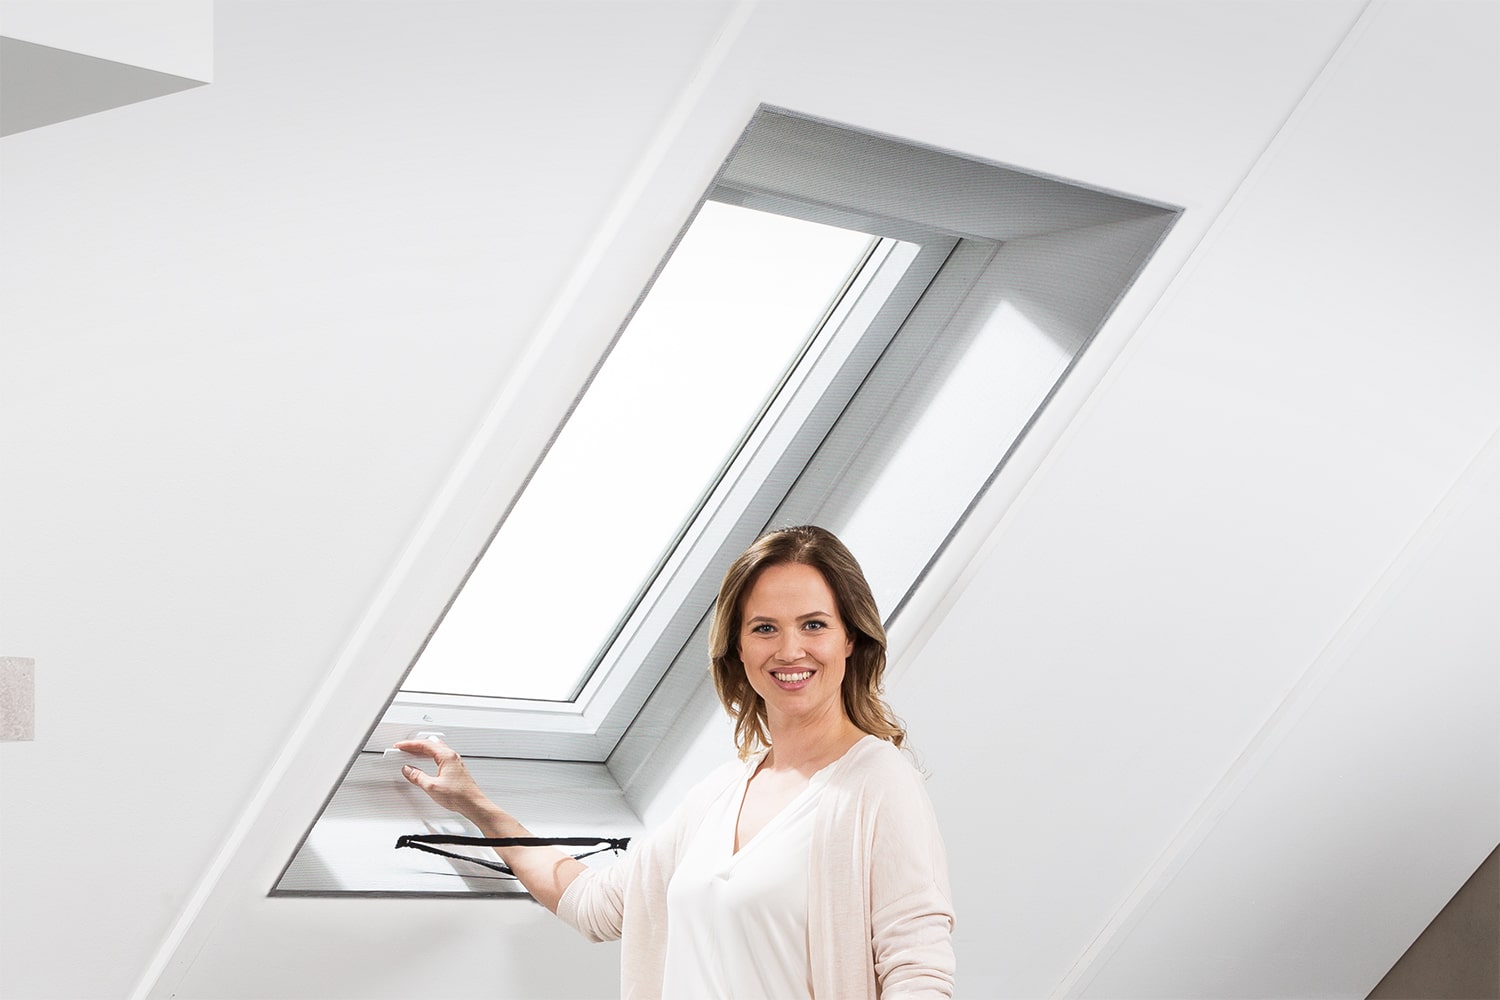 planeo Dachfenster Plissee Verdunkelung + Insektenschutz - Grau 80 x 120 cm  - Plissees - Sonnenschutz